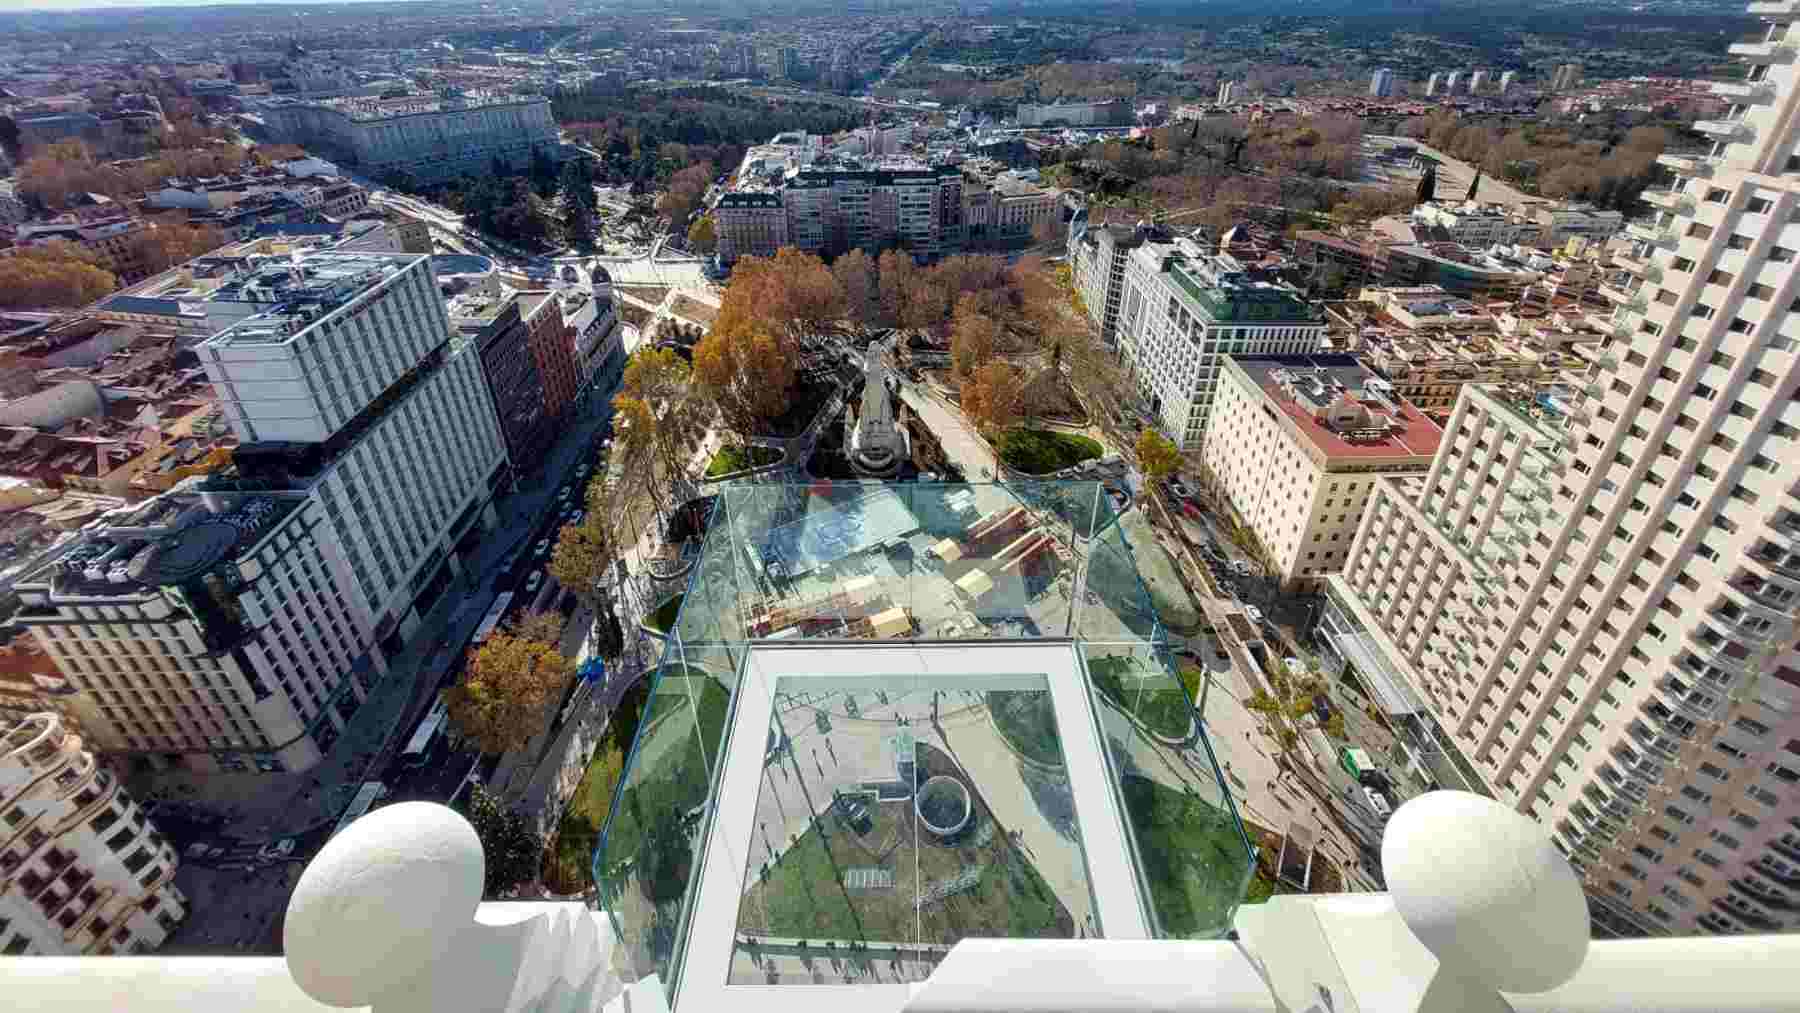 El balcón de vidrio está suspendido a unos 100 metros de altura sobre la Plaza de España.